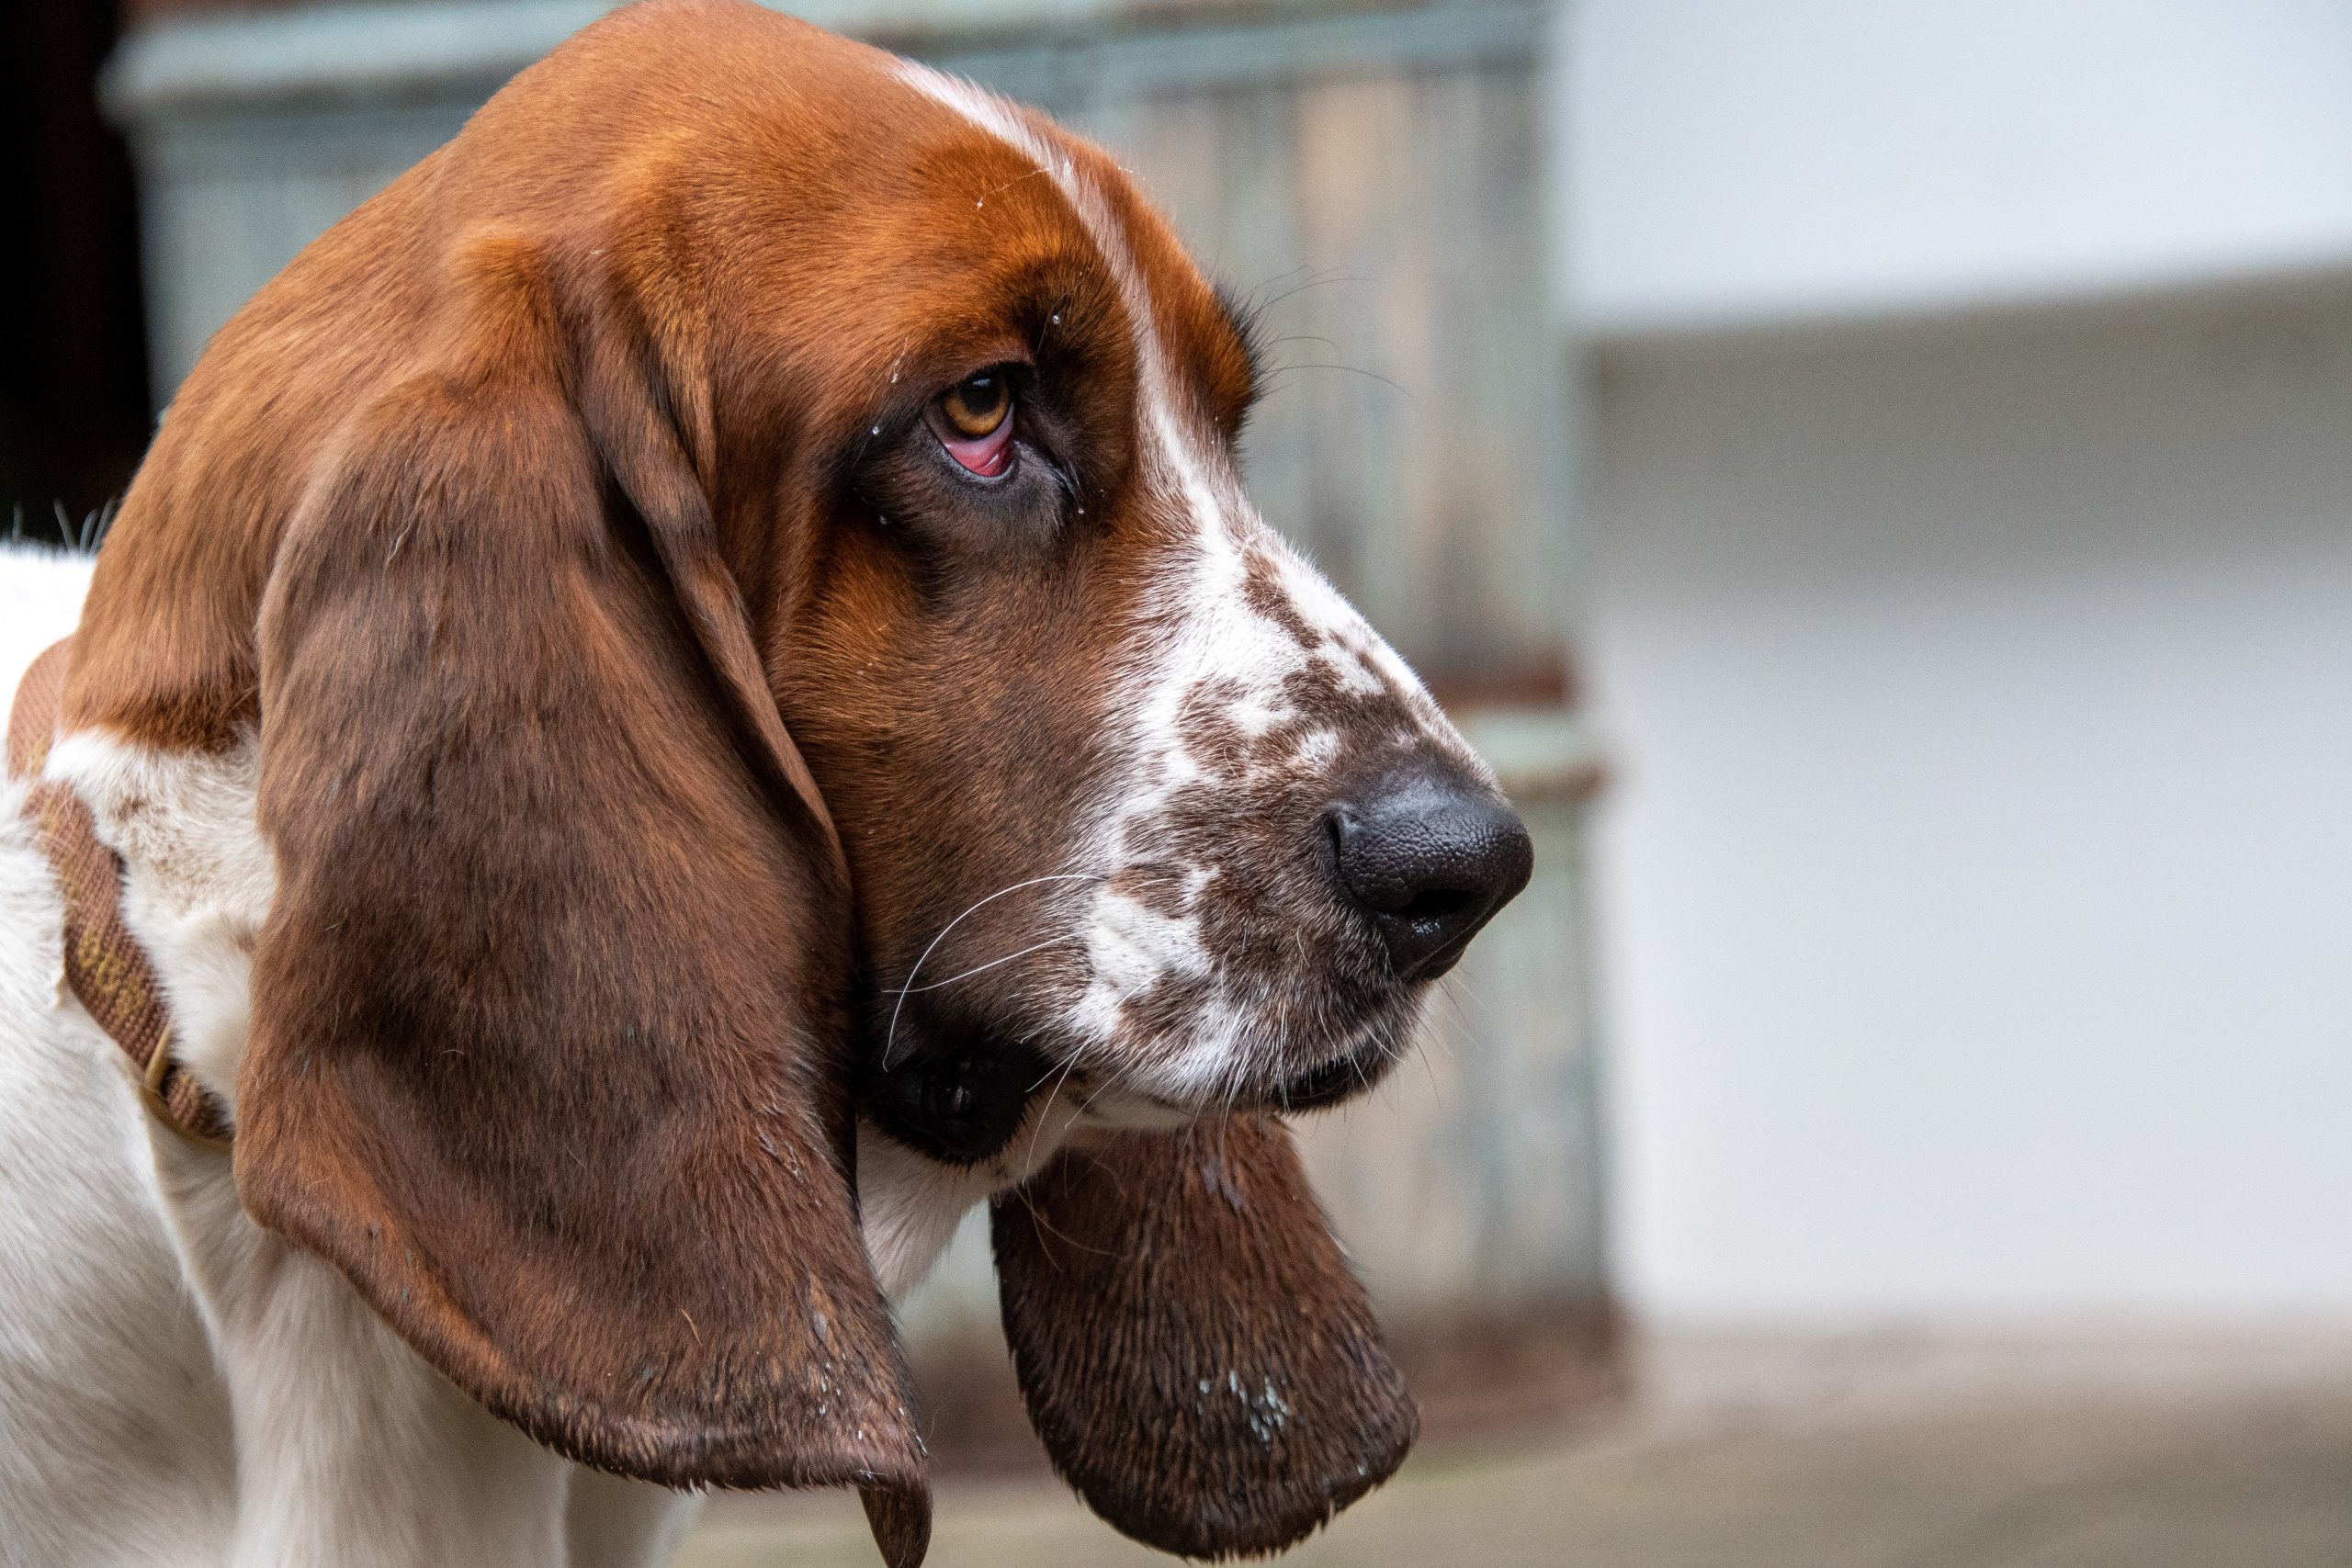 Zijn Basset Hounds de slechtste hond? –Iets om over na te denken